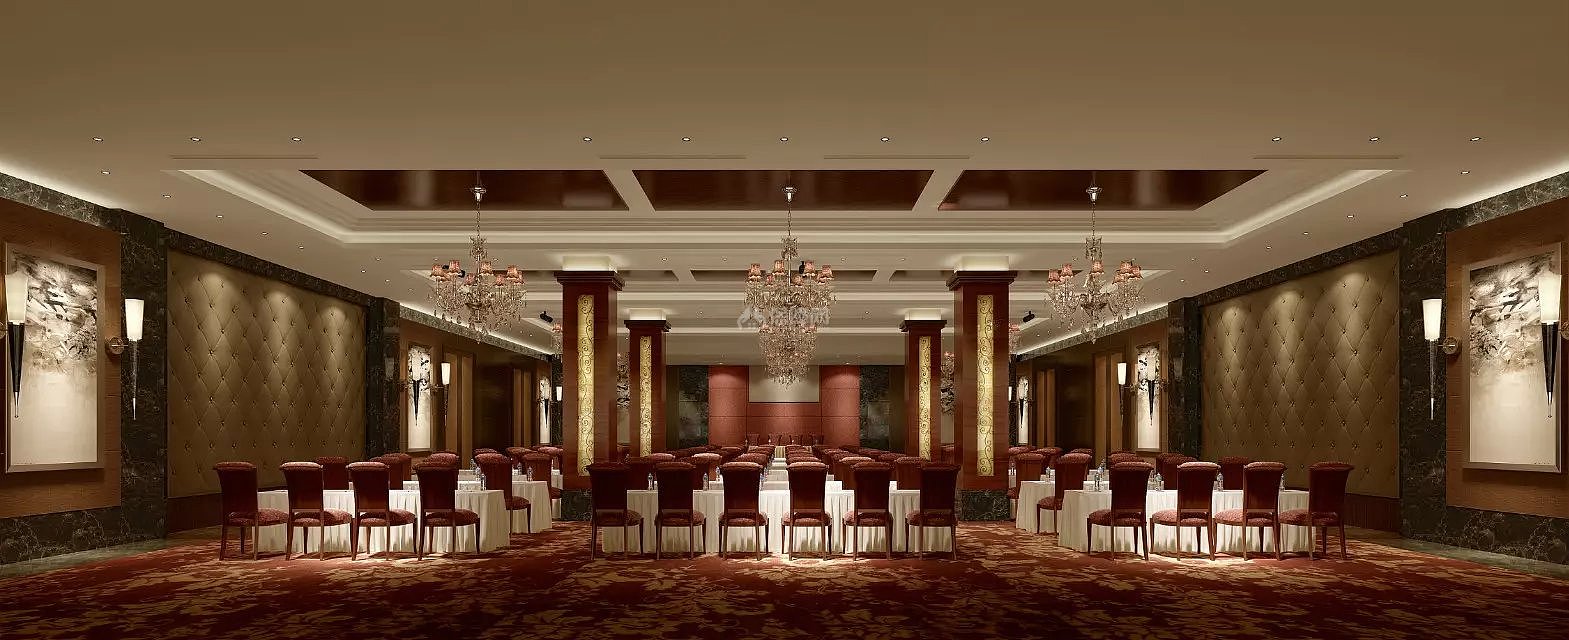 酒店会议厅设计效果图